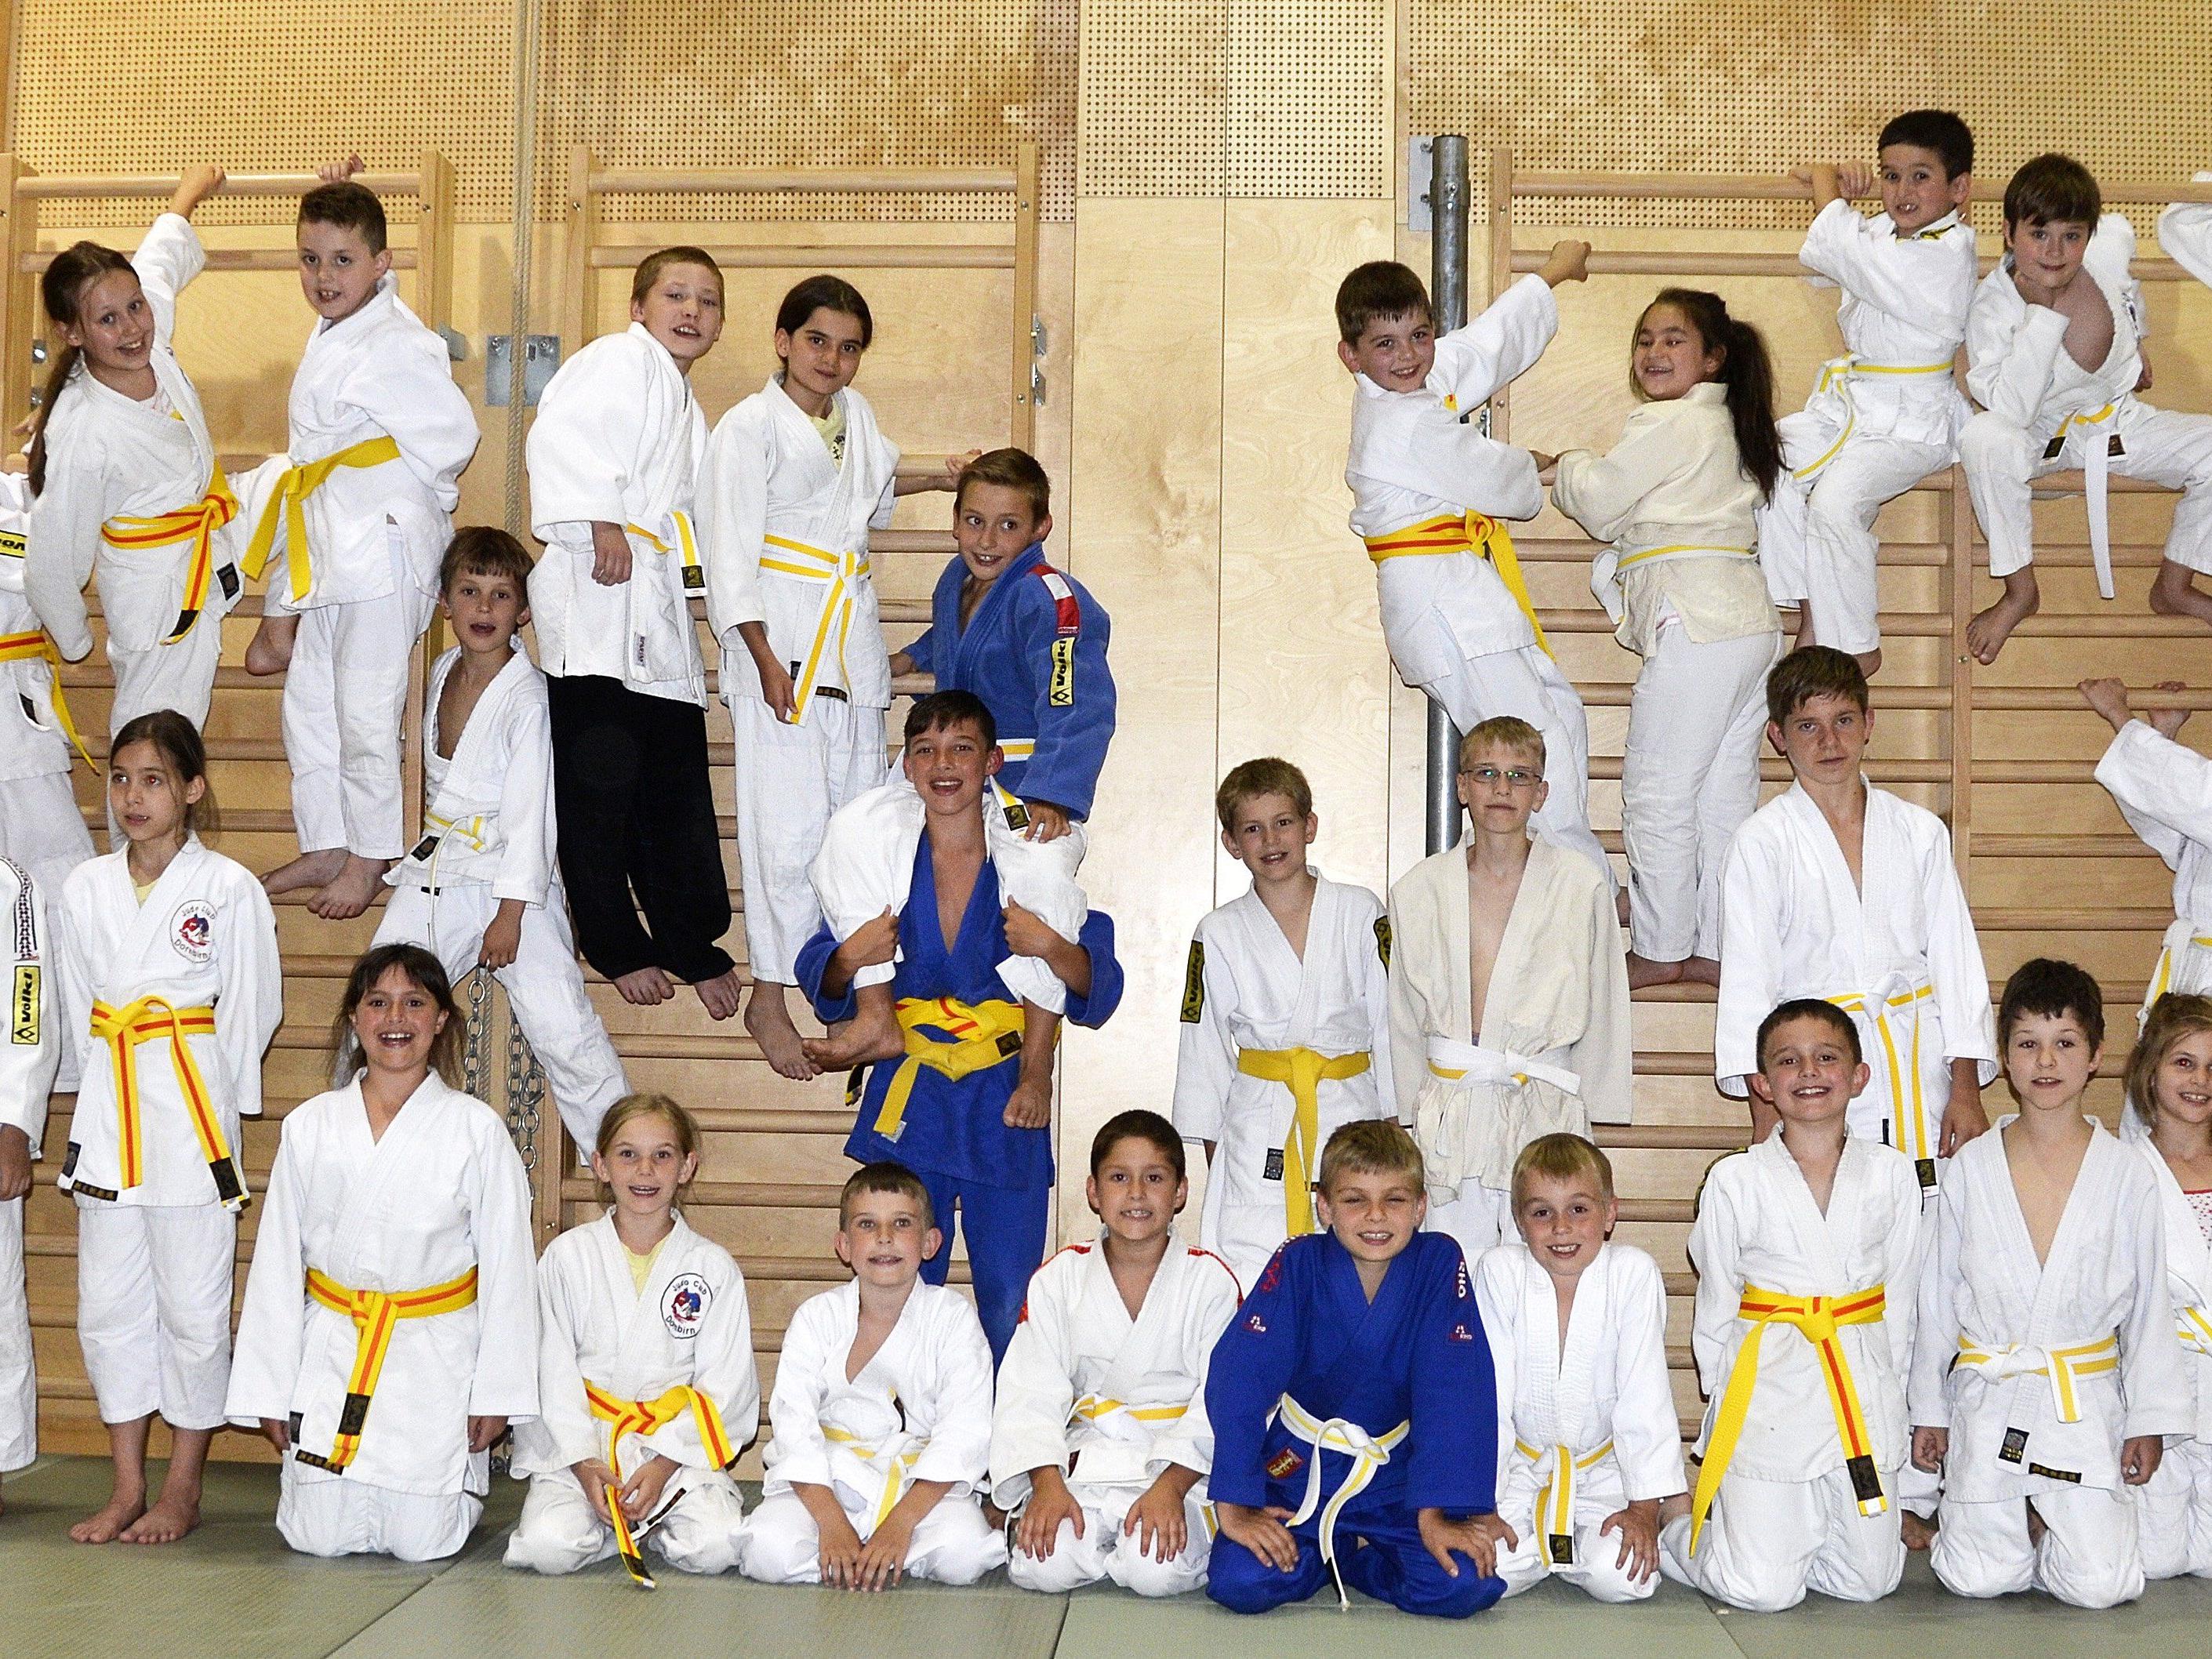 Der Judoclub Dornbirn ist stolz auf seinen erfolgreichen Nachwuchs.